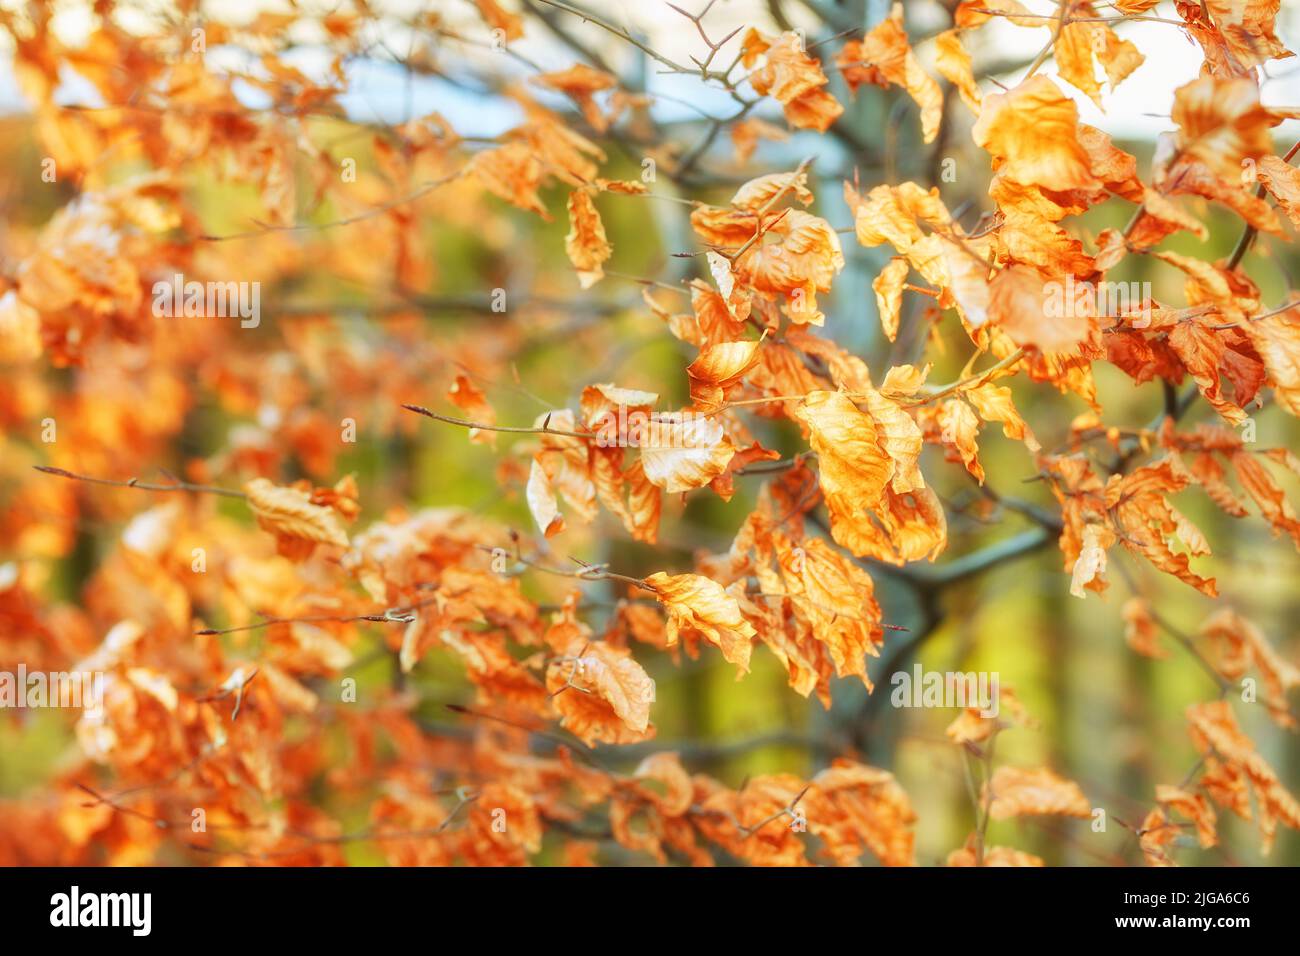 Nahaufnahme der Blätter der orangefarbenen Herbstbuche mit Bokeh-Hintergrund in einem abgelegenen Wald oder einer Landschaft in Norwegen. Hölzer mit trockenem, strukturfarbenem Laub Stockfoto